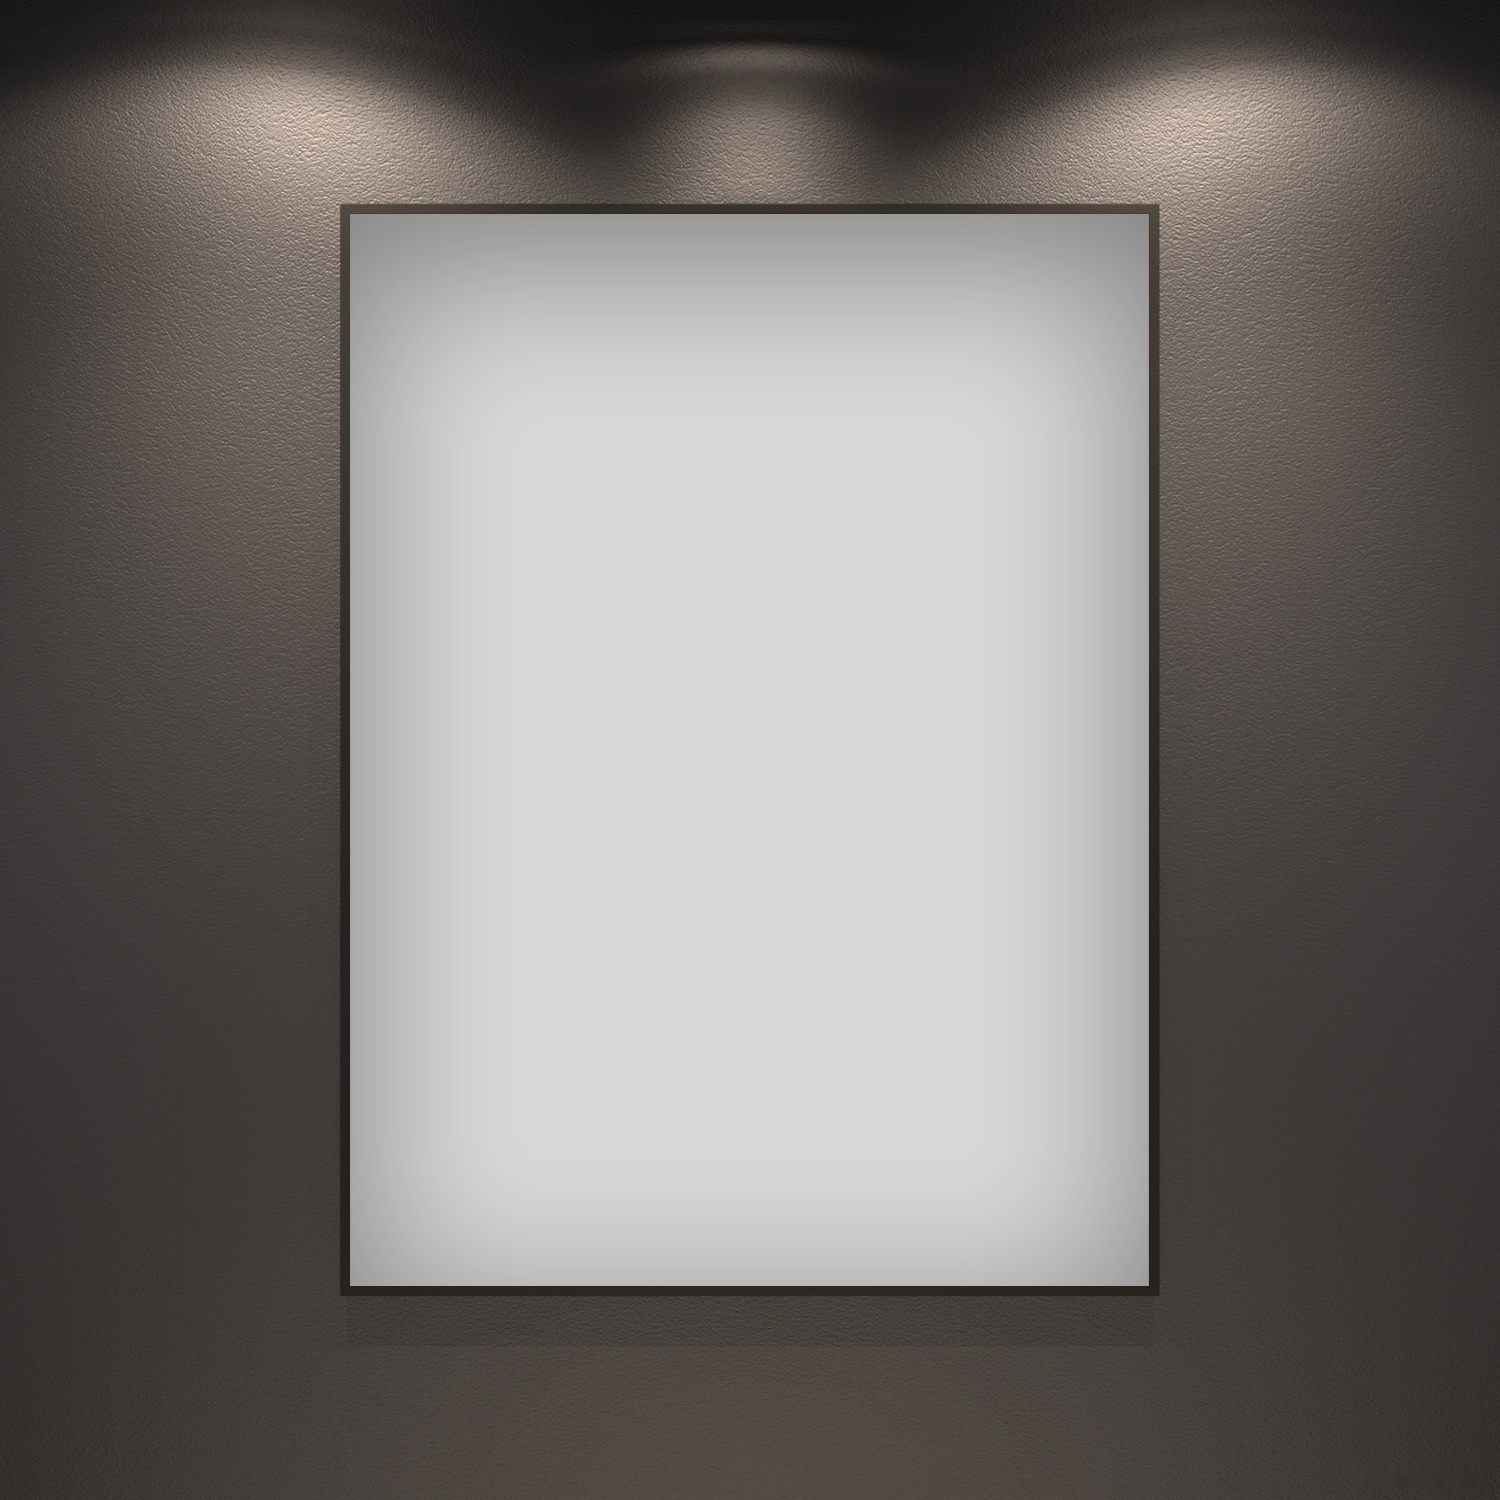 зеркало wellsee зеркало 7 rays' spectrum 172200640, 60 х 80 см